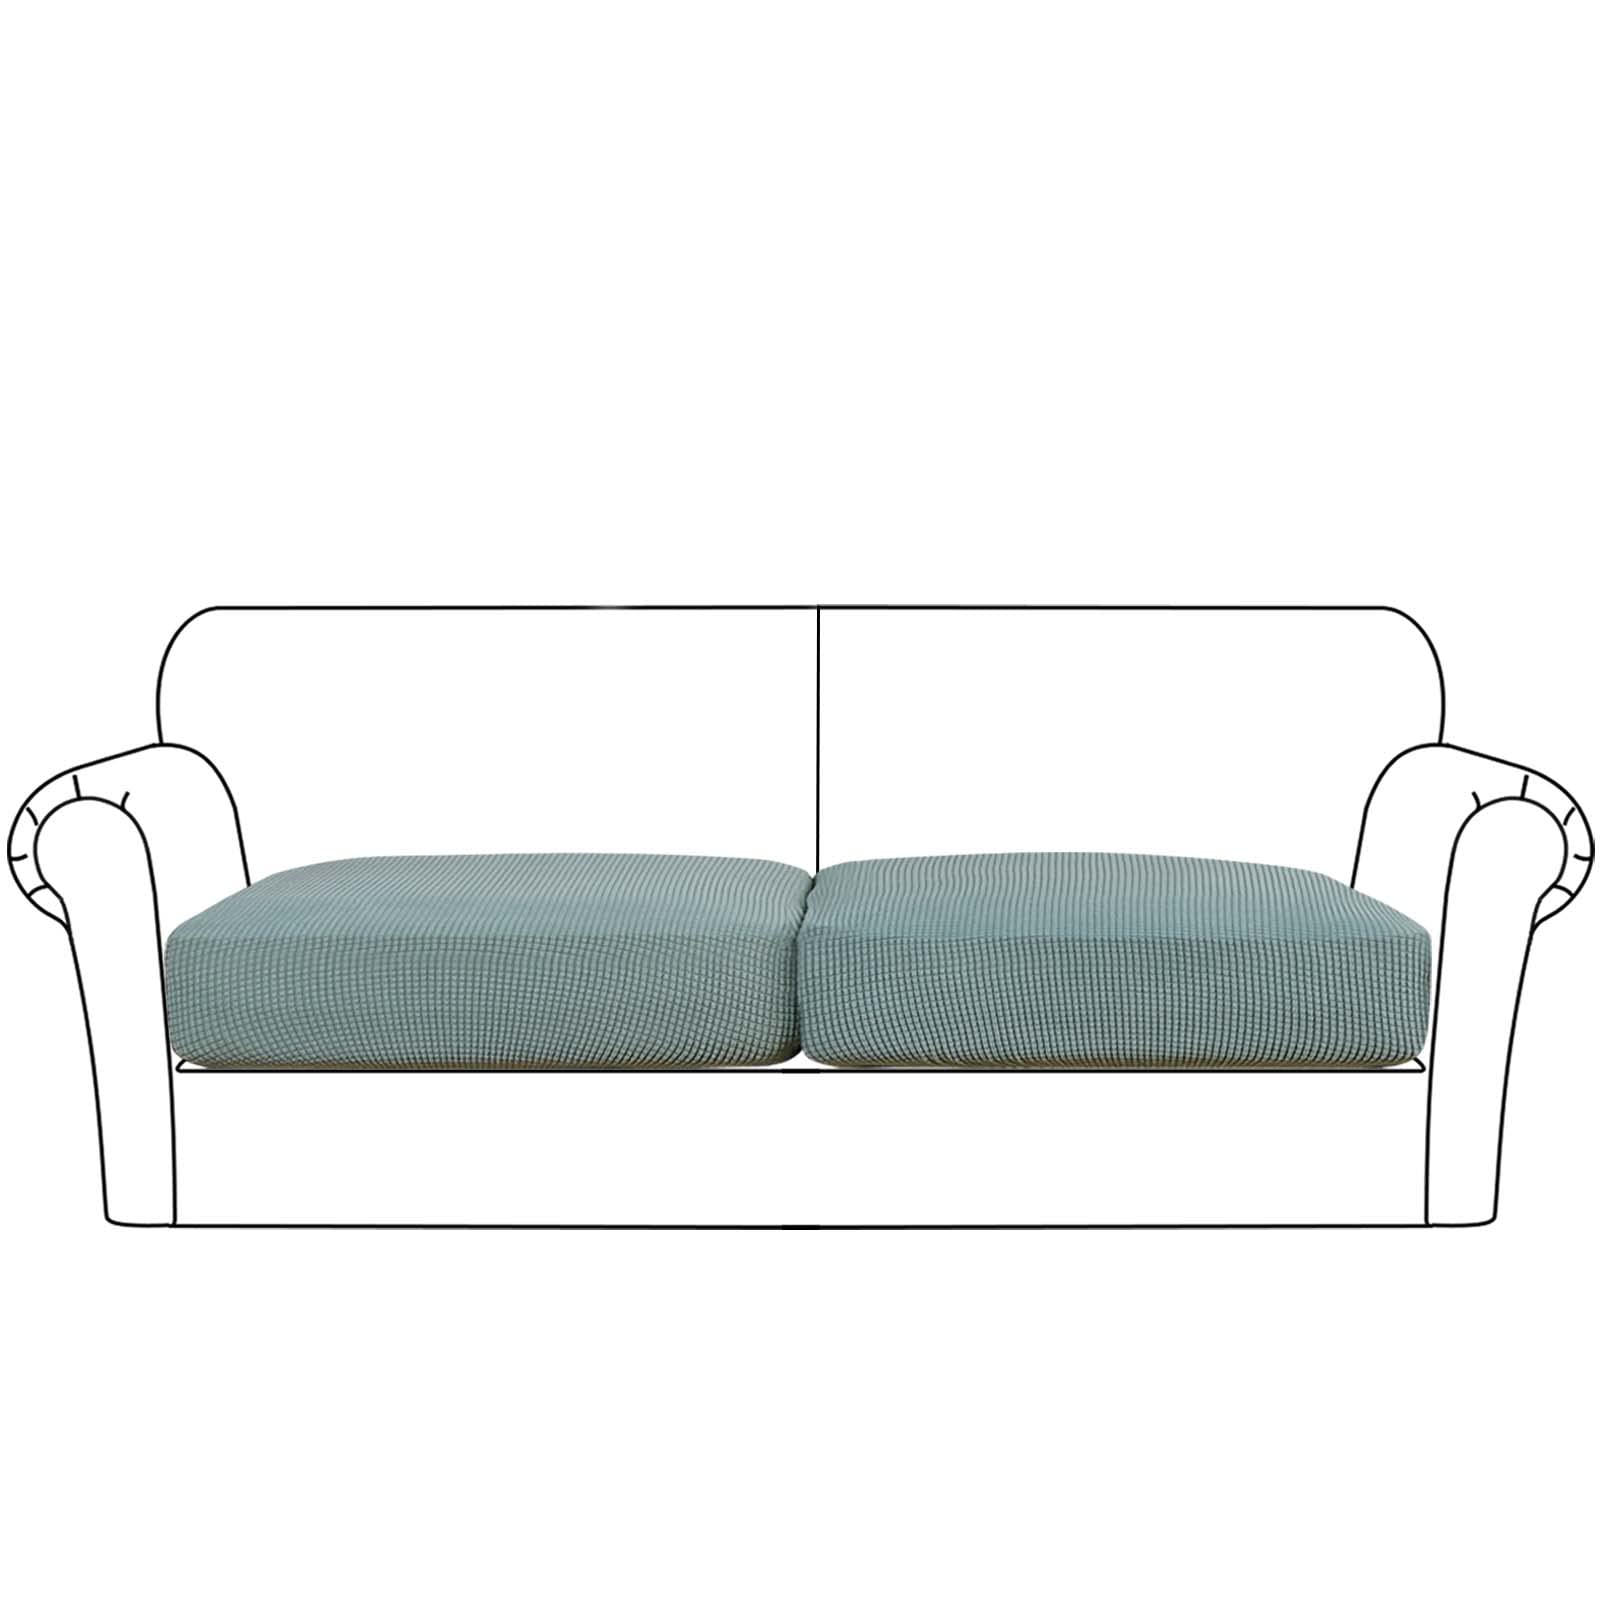 Flamingo P High Stretch Seat cushion cover Sofa cushion Furniture Protector for Sofa Seat Sofa Slipcover Sofa cover Soft Flexibi